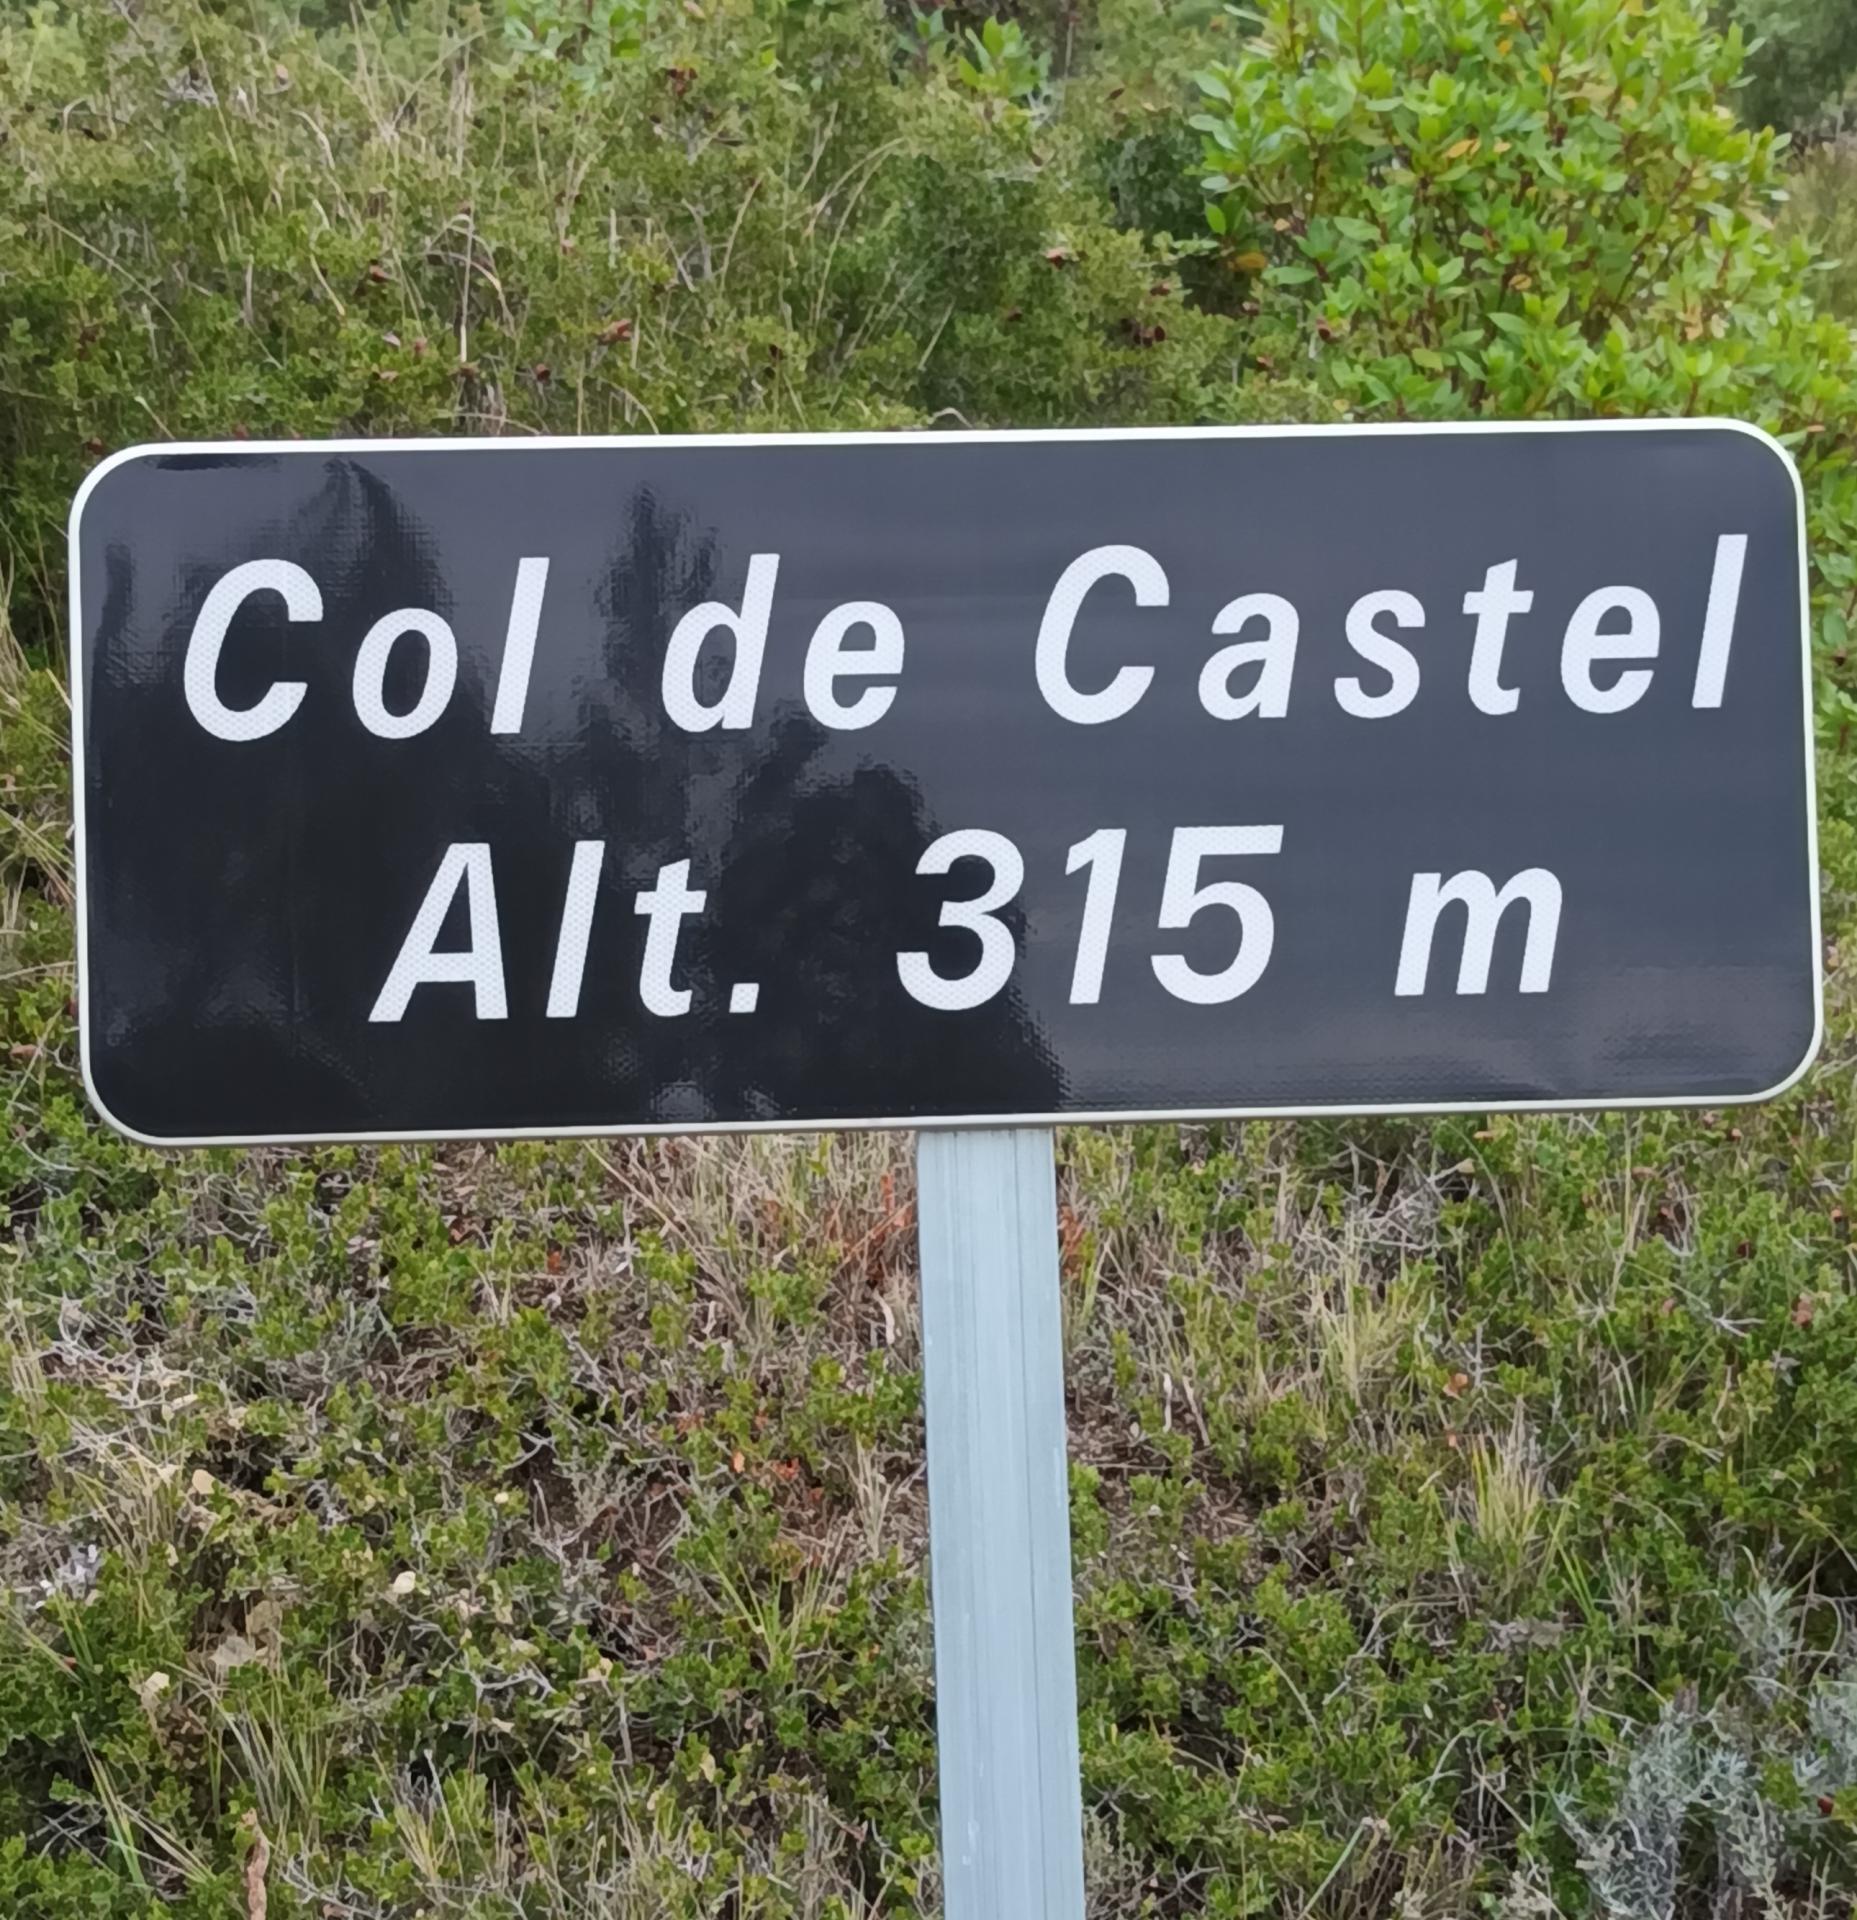 Col de castel 315m